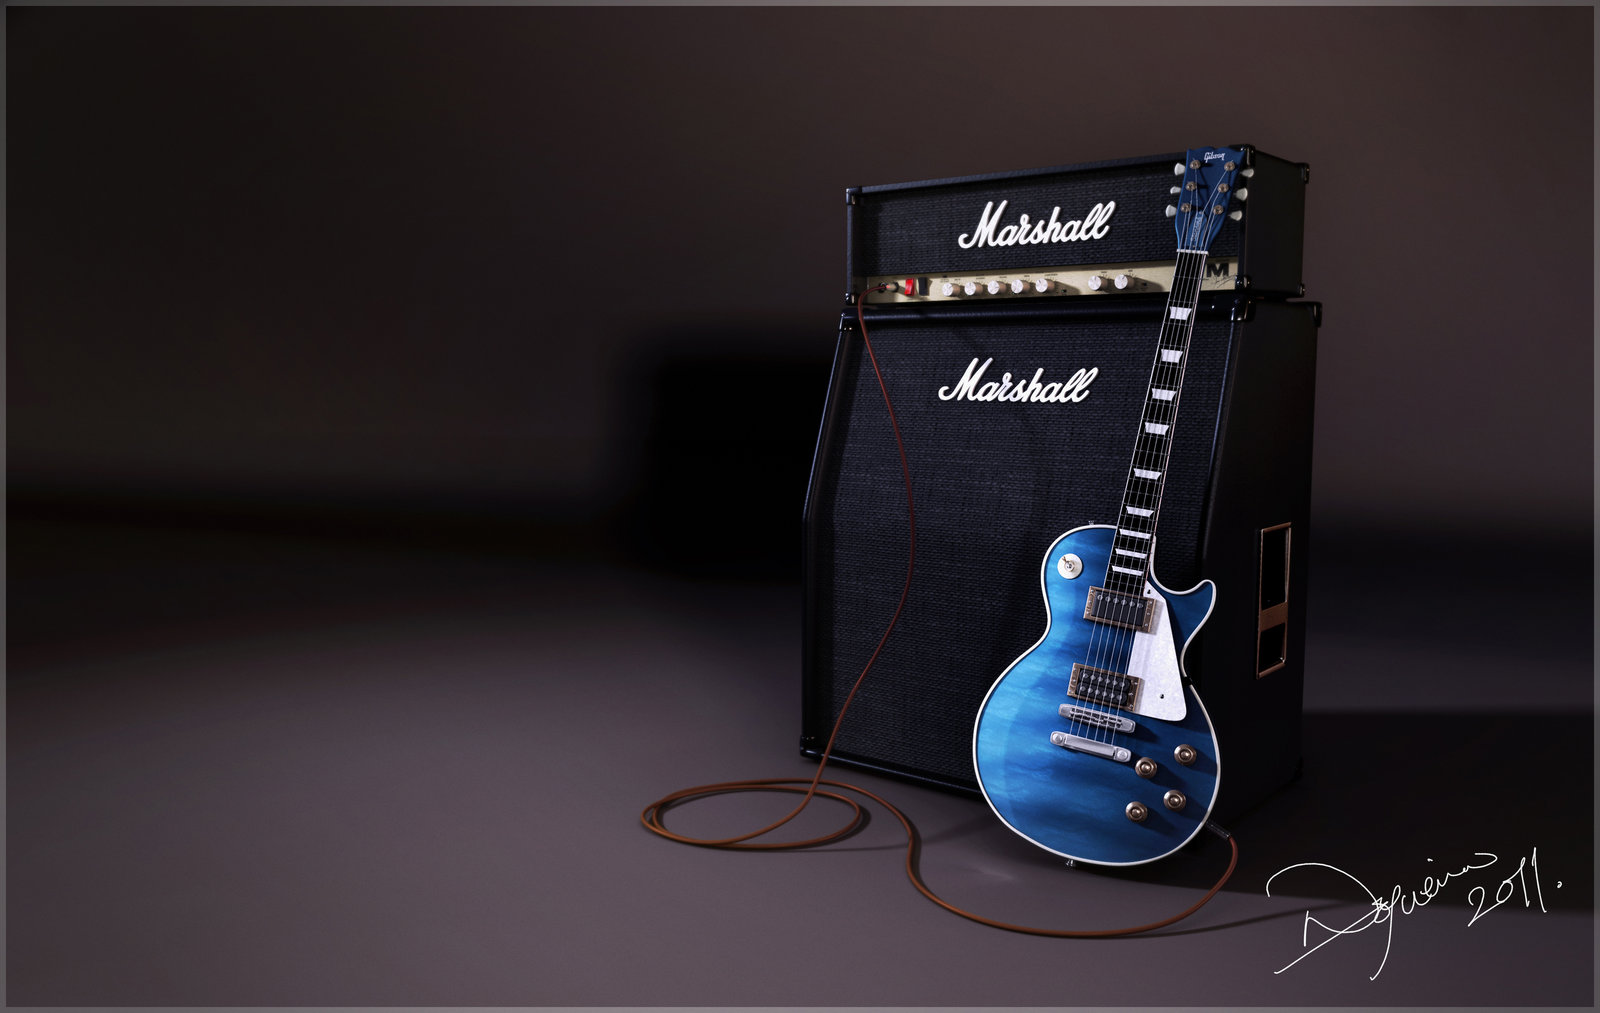 Gibson Guitar Wallpaper HD Jpg